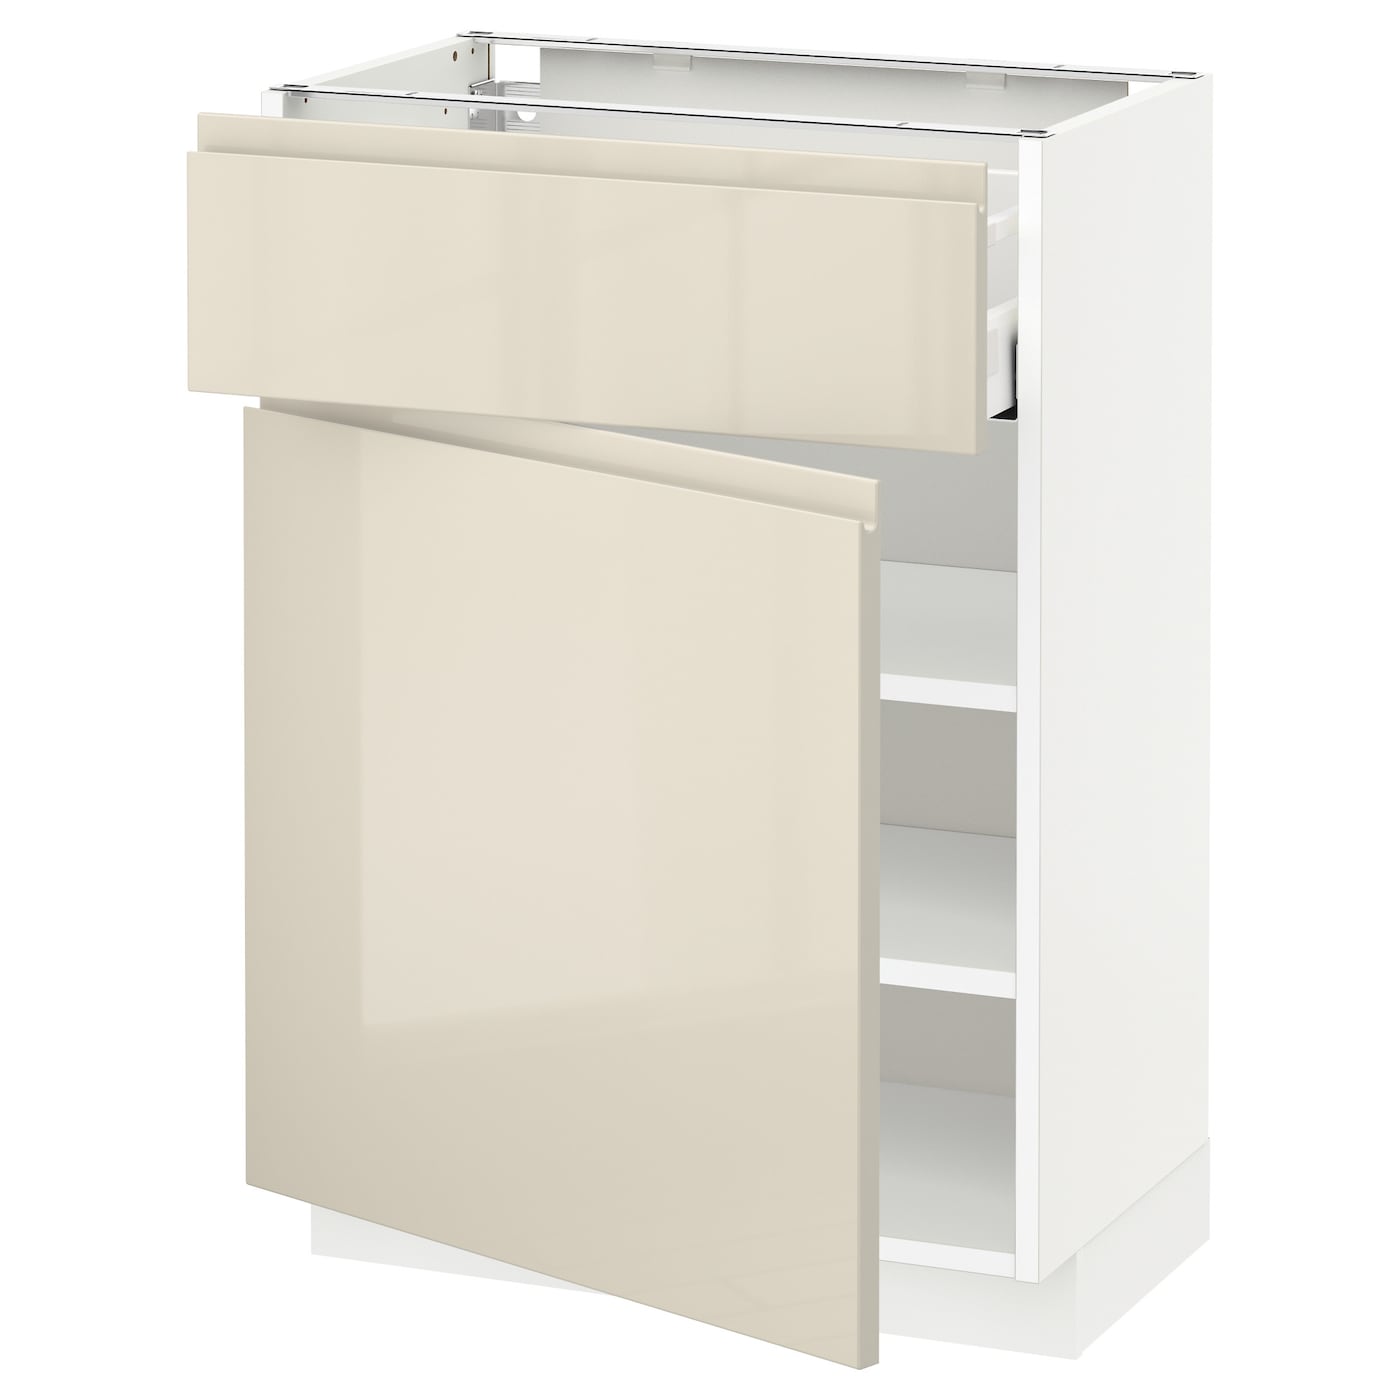 Напольный шкаф - METOD / MAXIMERA IKEA/ МЕТОД/ МАКСИМЕРА ИКЕА,  88х60 см, белый/светло-бежевый